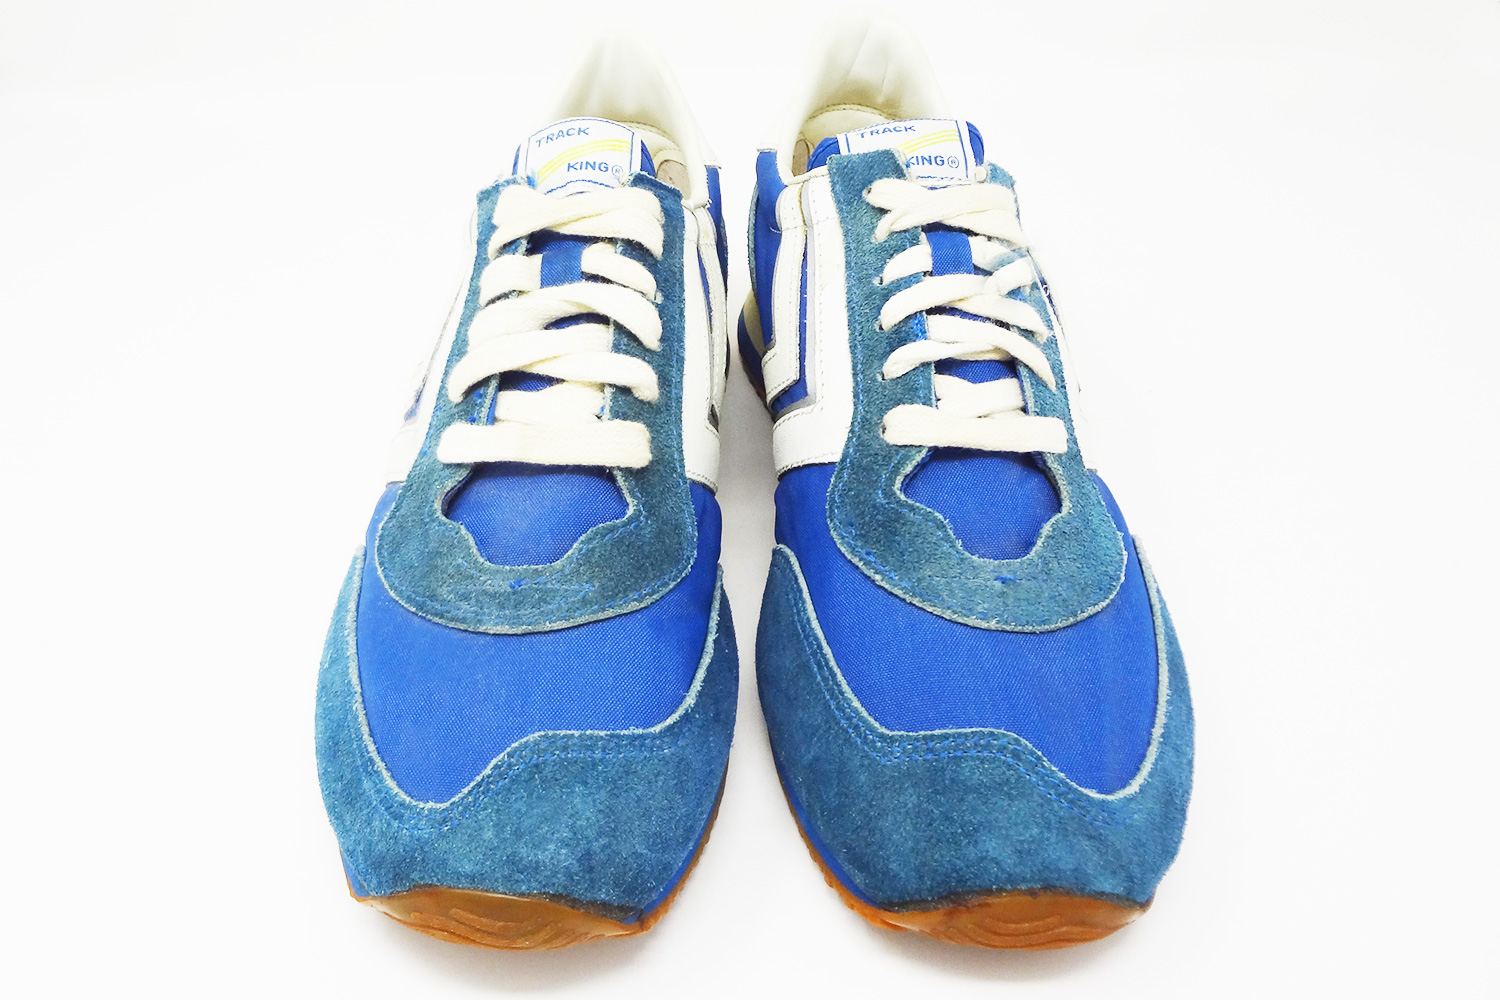 The Deffest®. A vintage sneaker blog. — Track King brand 70s vintage ...